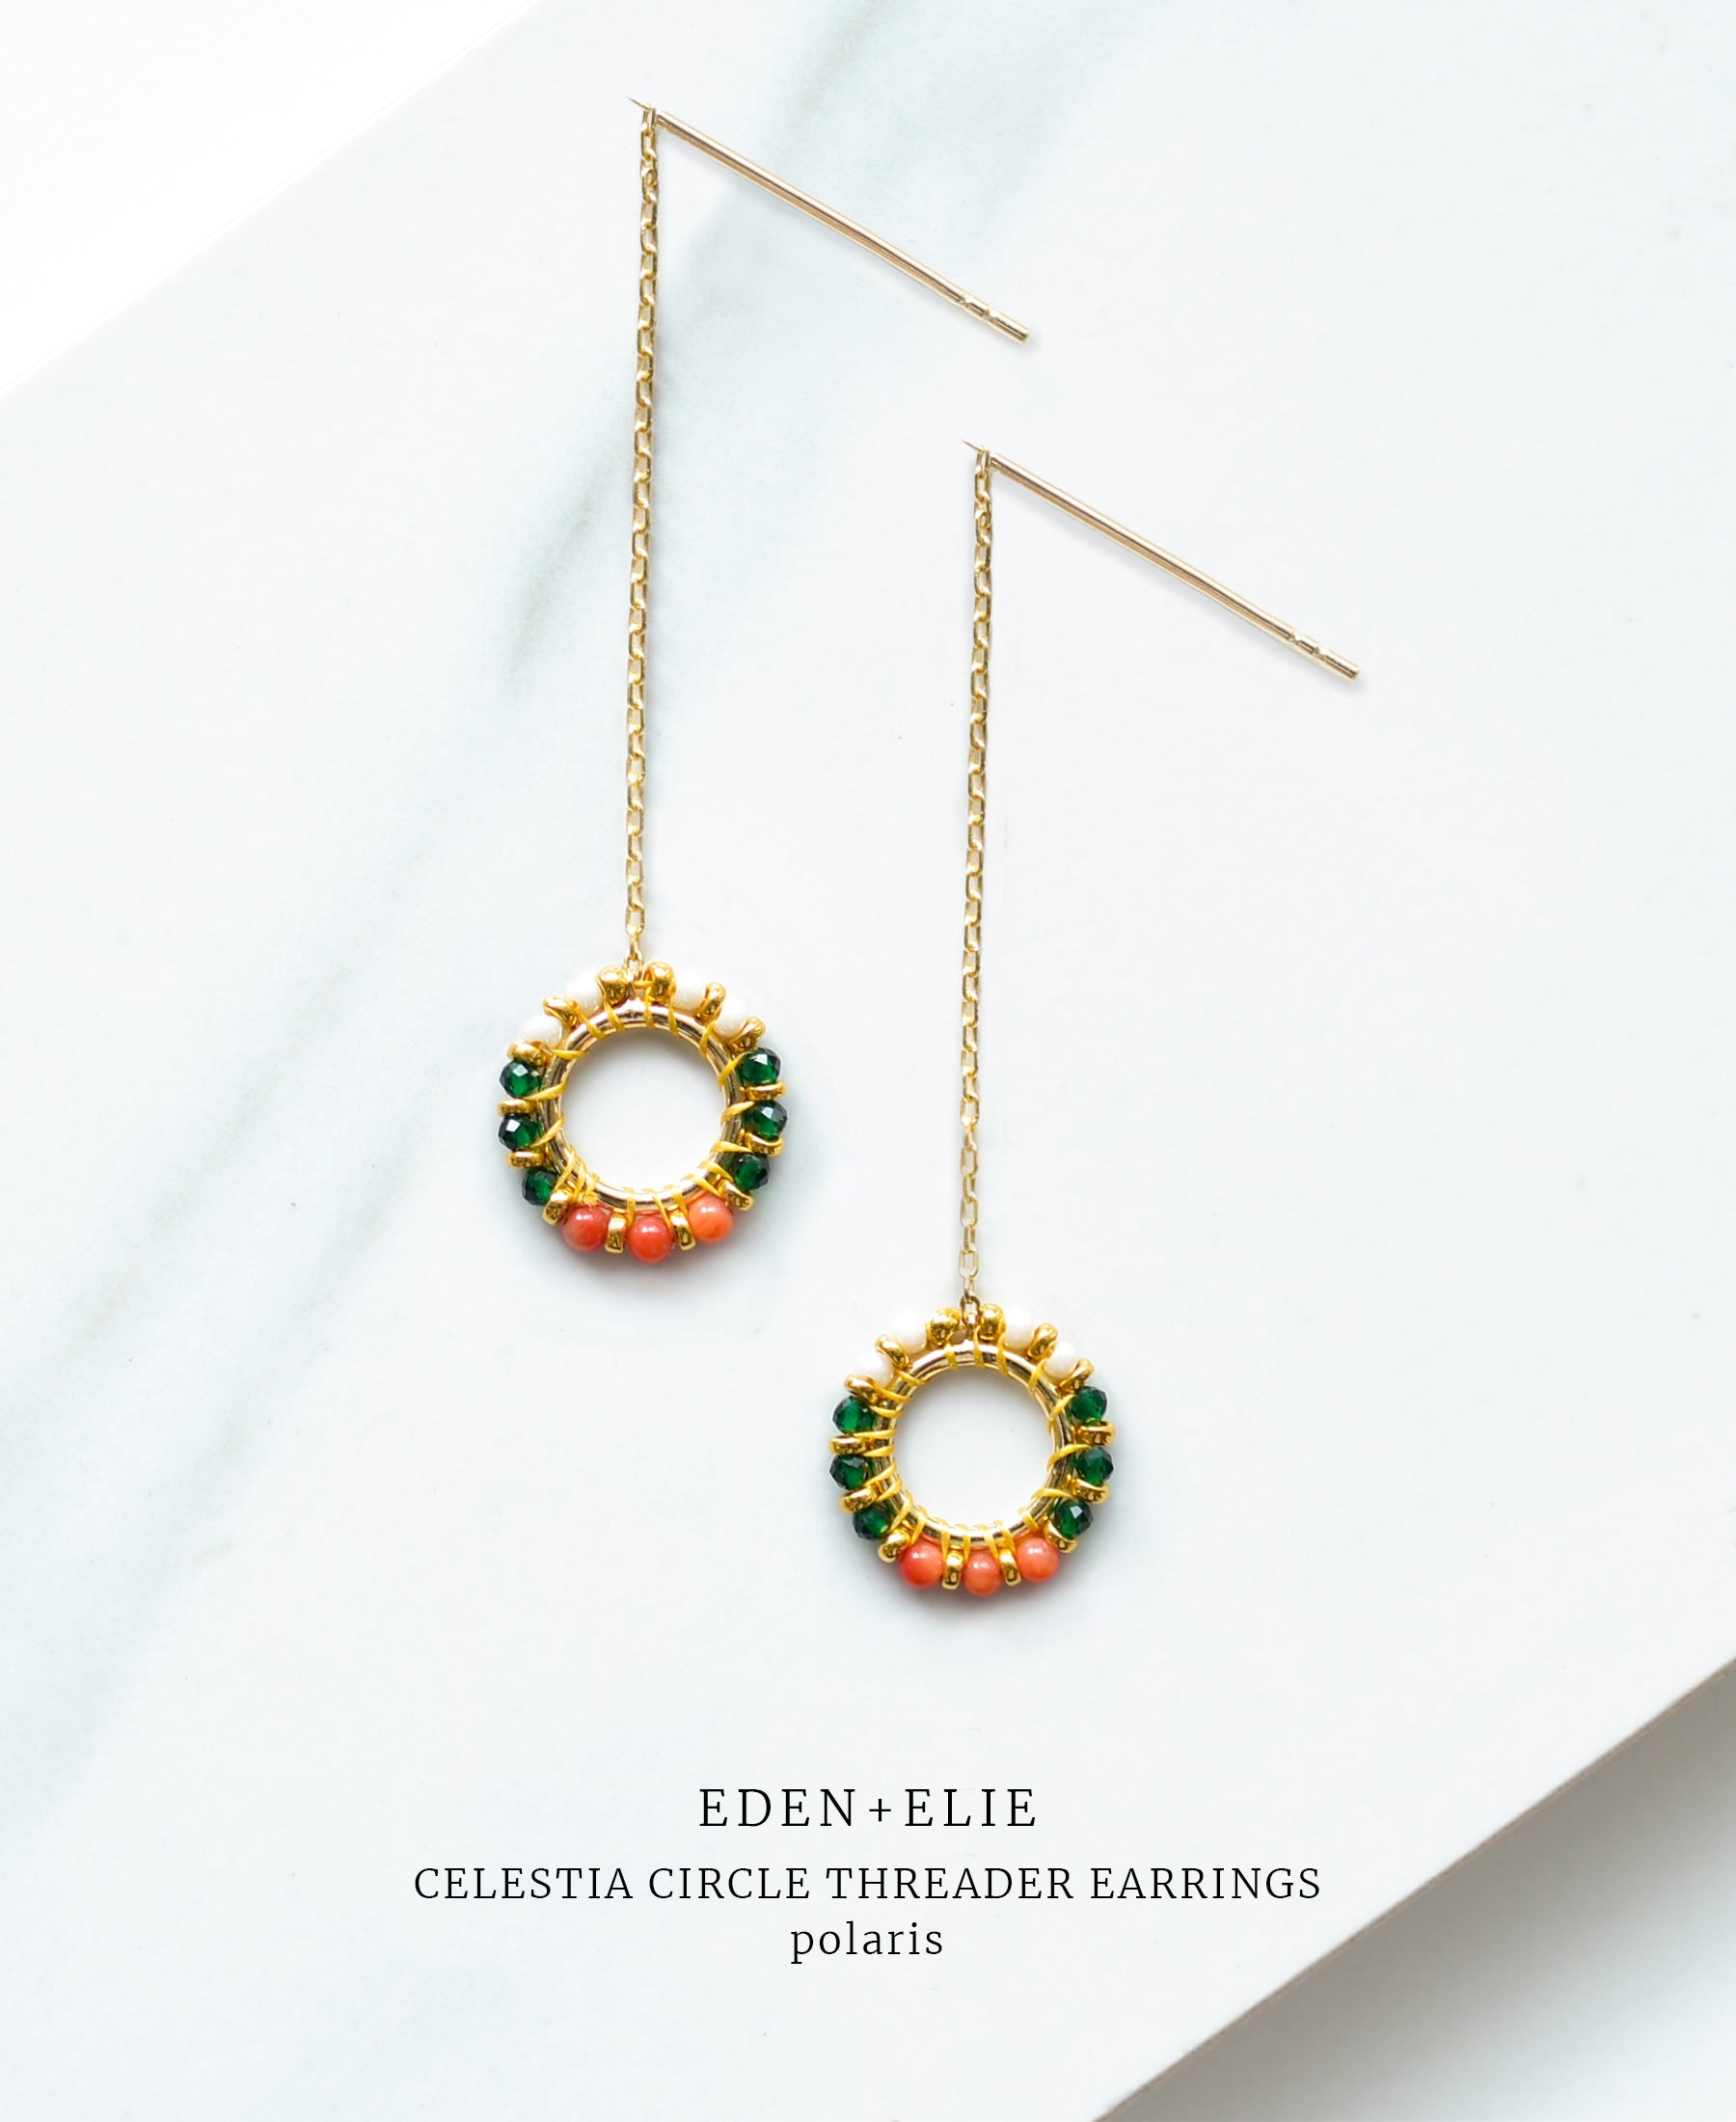 EDEN + ELIE Celestia Circle Threader Earrings - Polaris